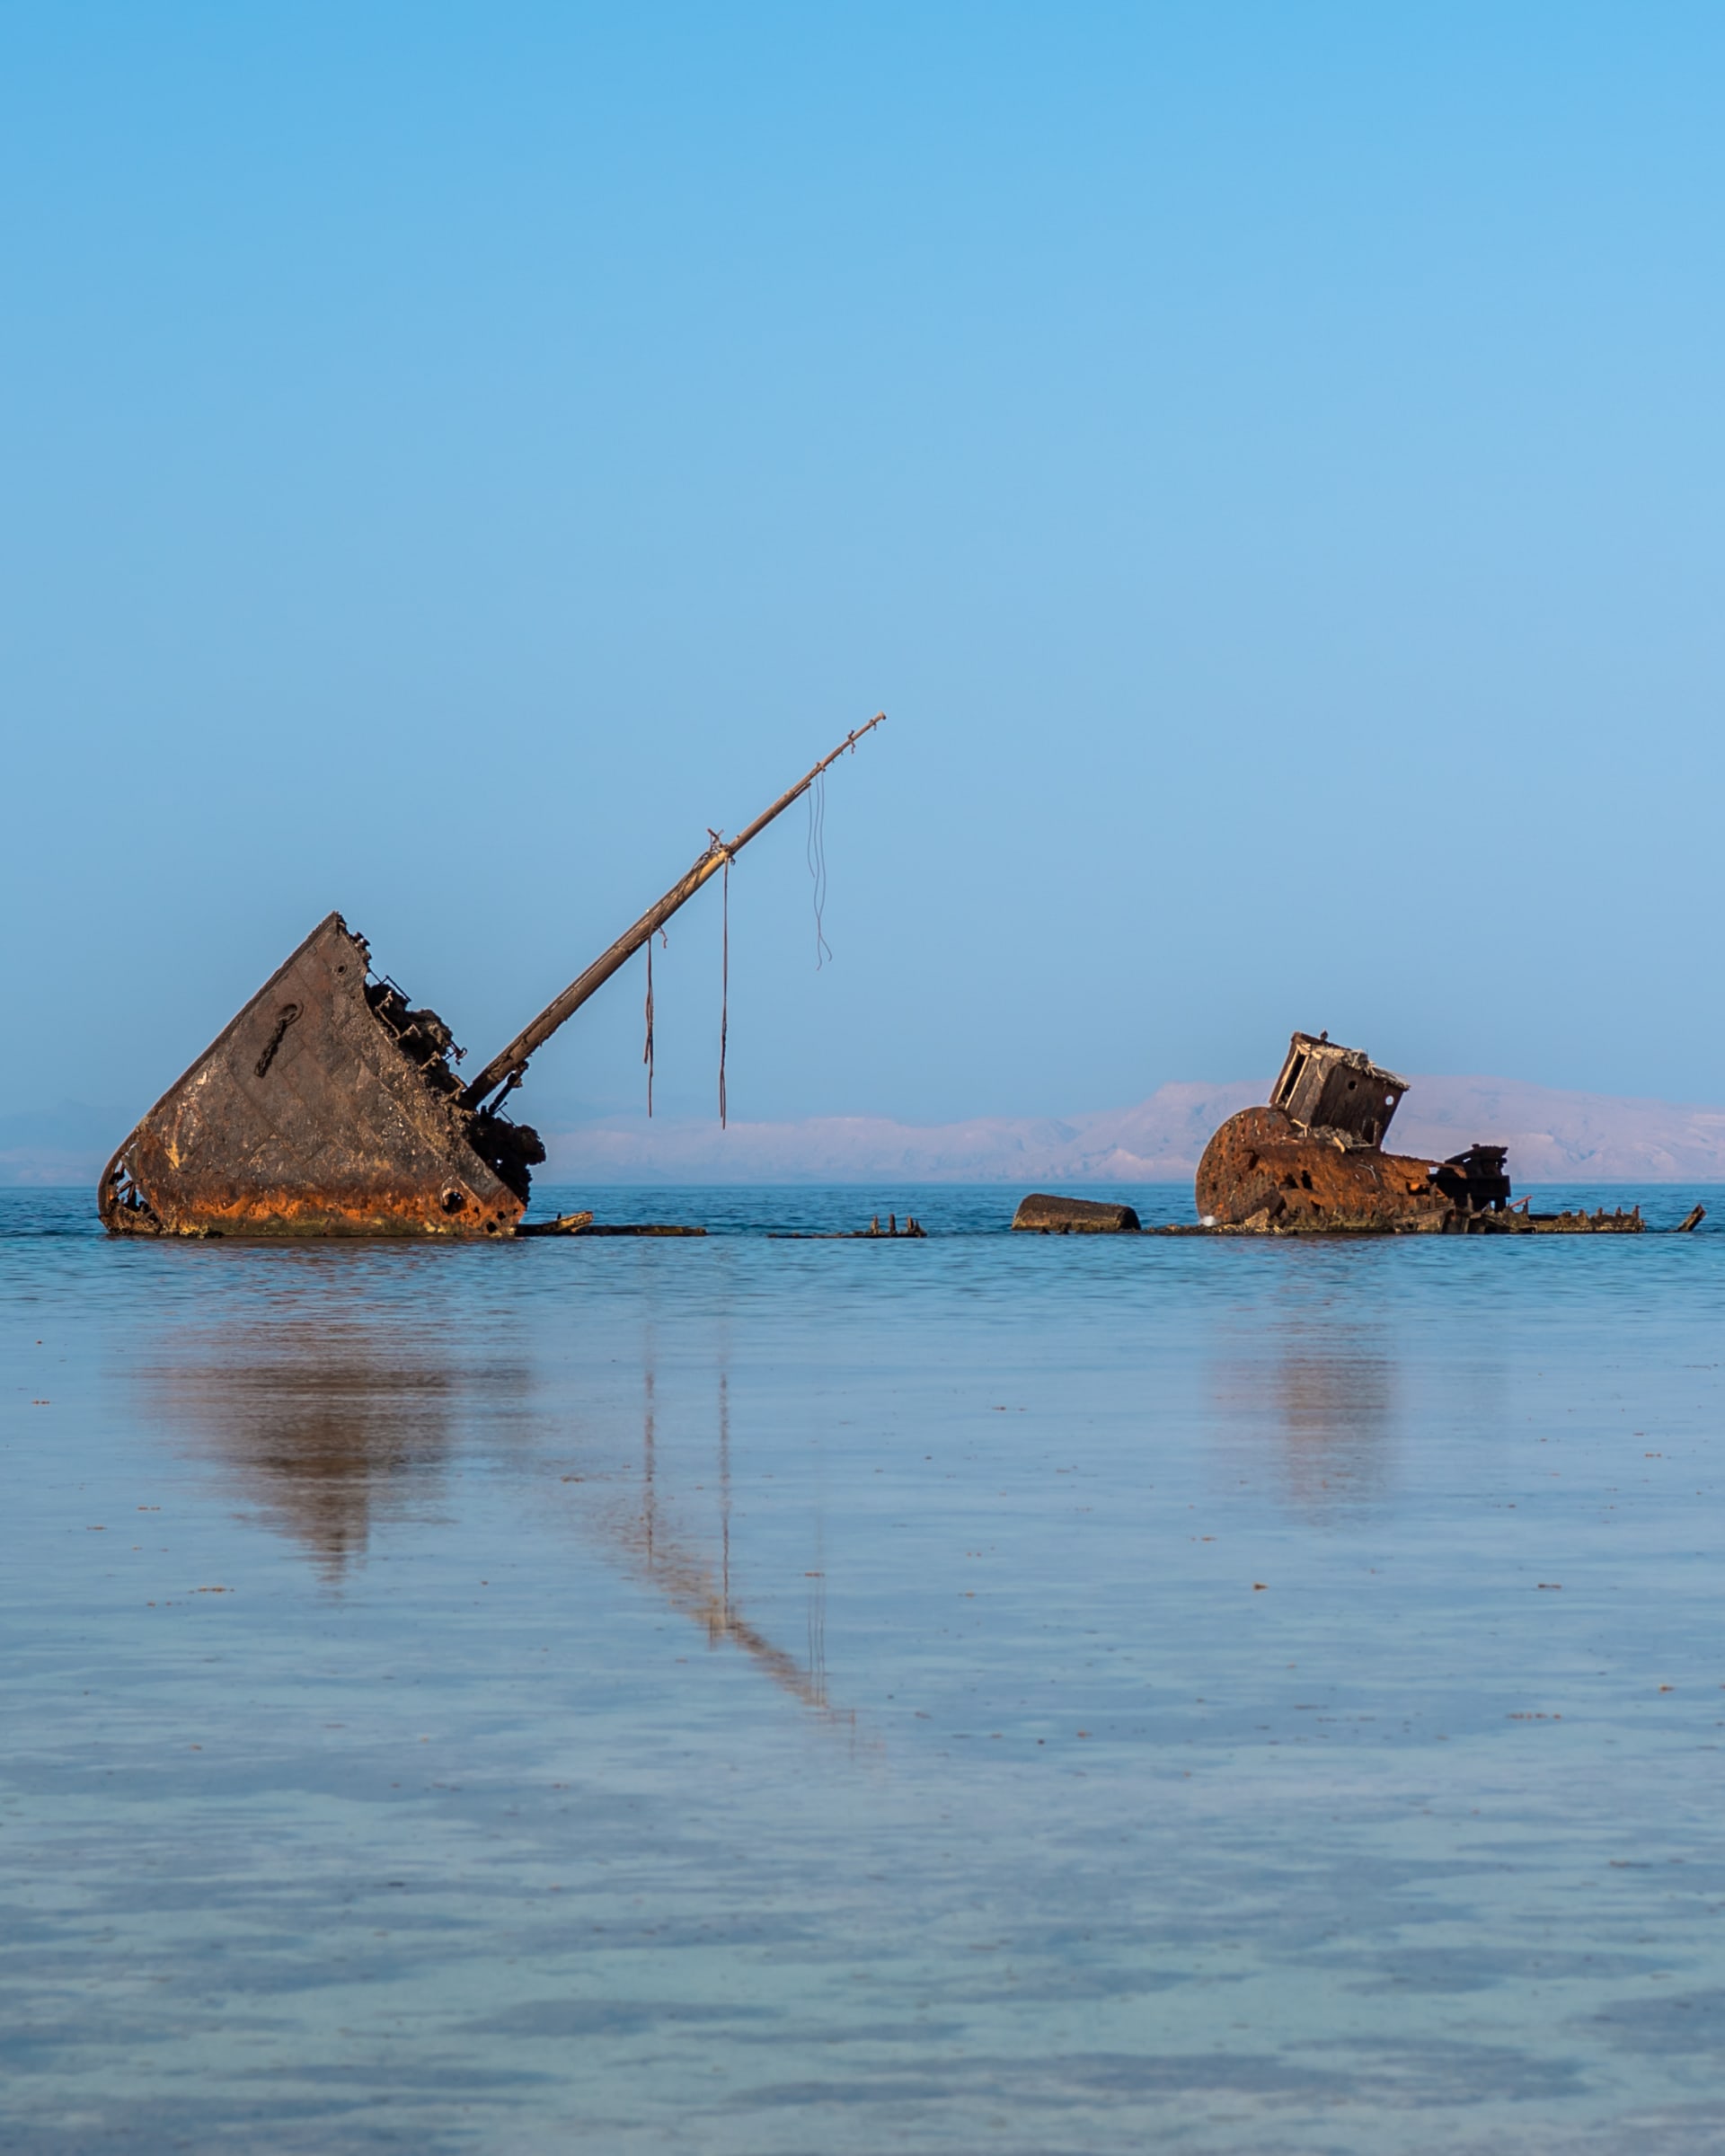 "الغرقانة"..حطام سفينة يجذب الزوار إلى محمية نبق بمصر..ما قصتها؟